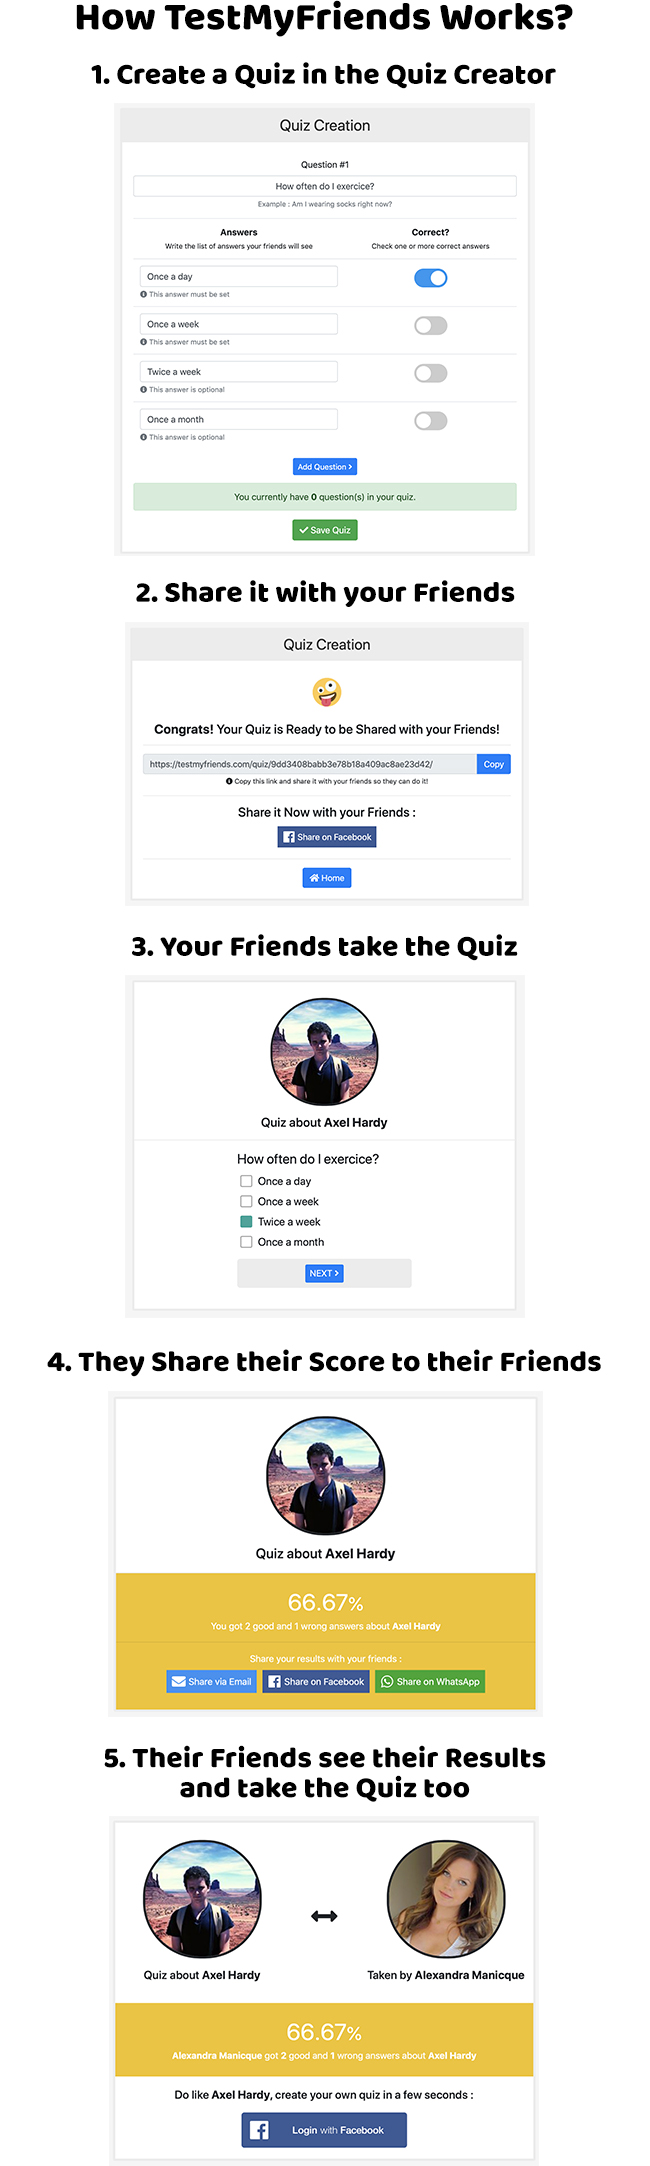 TestMyFriends - Complete Viral Friend Quiz Website - 2